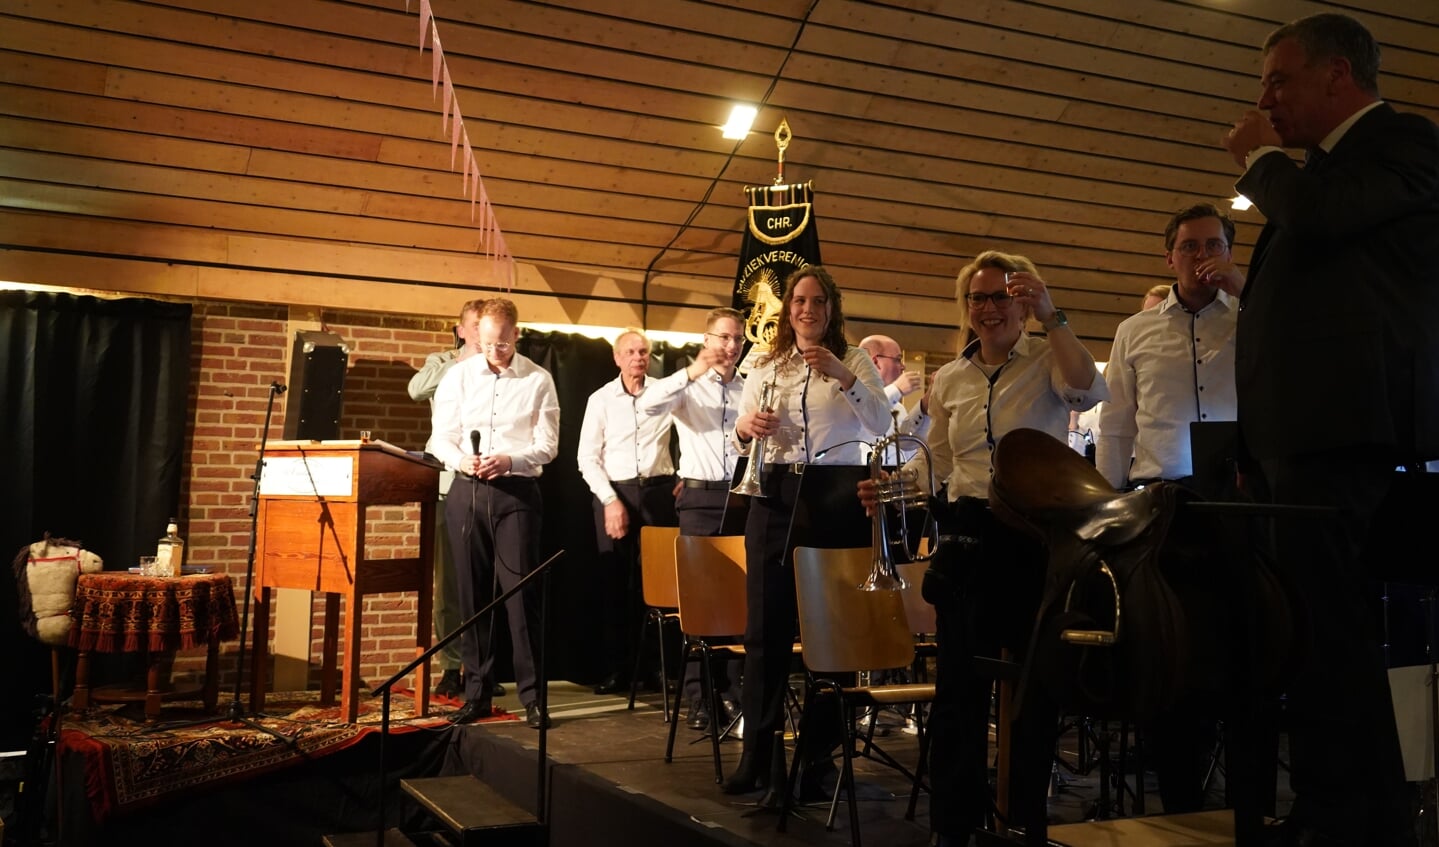 Muzikanten van Excelsior brengen een toost uit op de Koninklijke Erepenning. Foto: Frank Vinkenvleugel